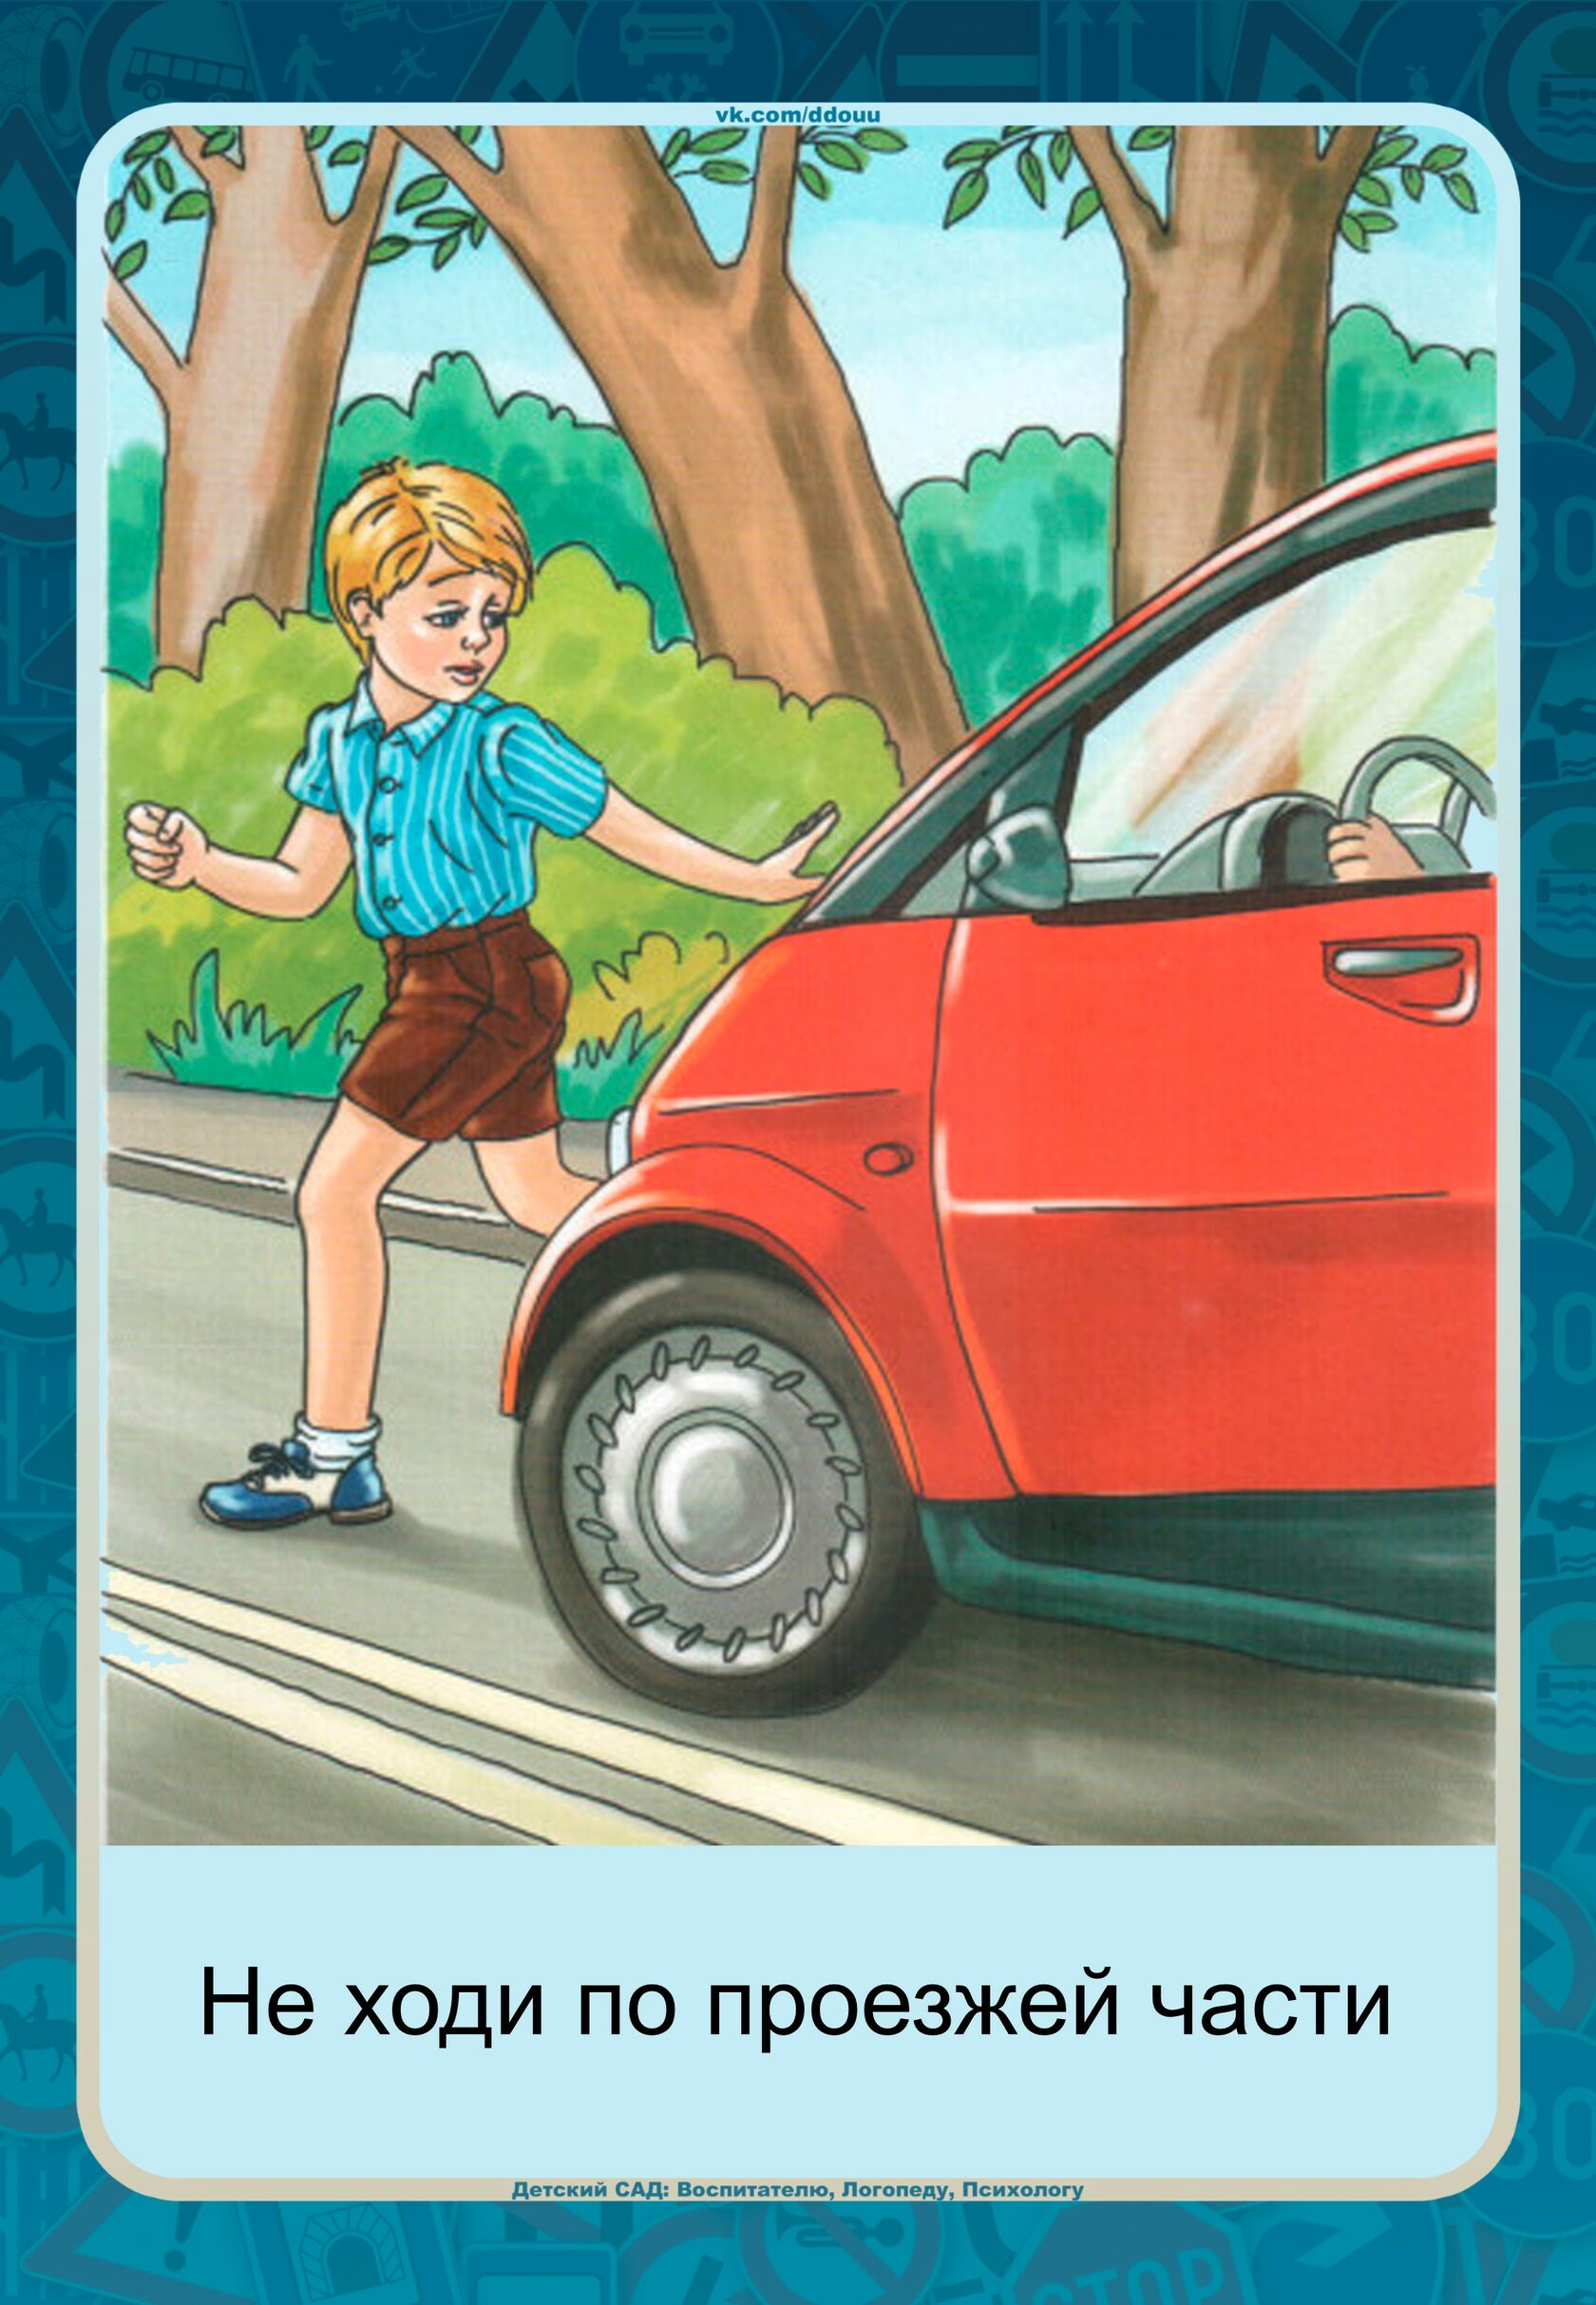 Дети играющие на дороге. Проезжая часть для детей. Выбегать на дорогу. Картина проезжей части для детей. Выбегать на проезжую часть.